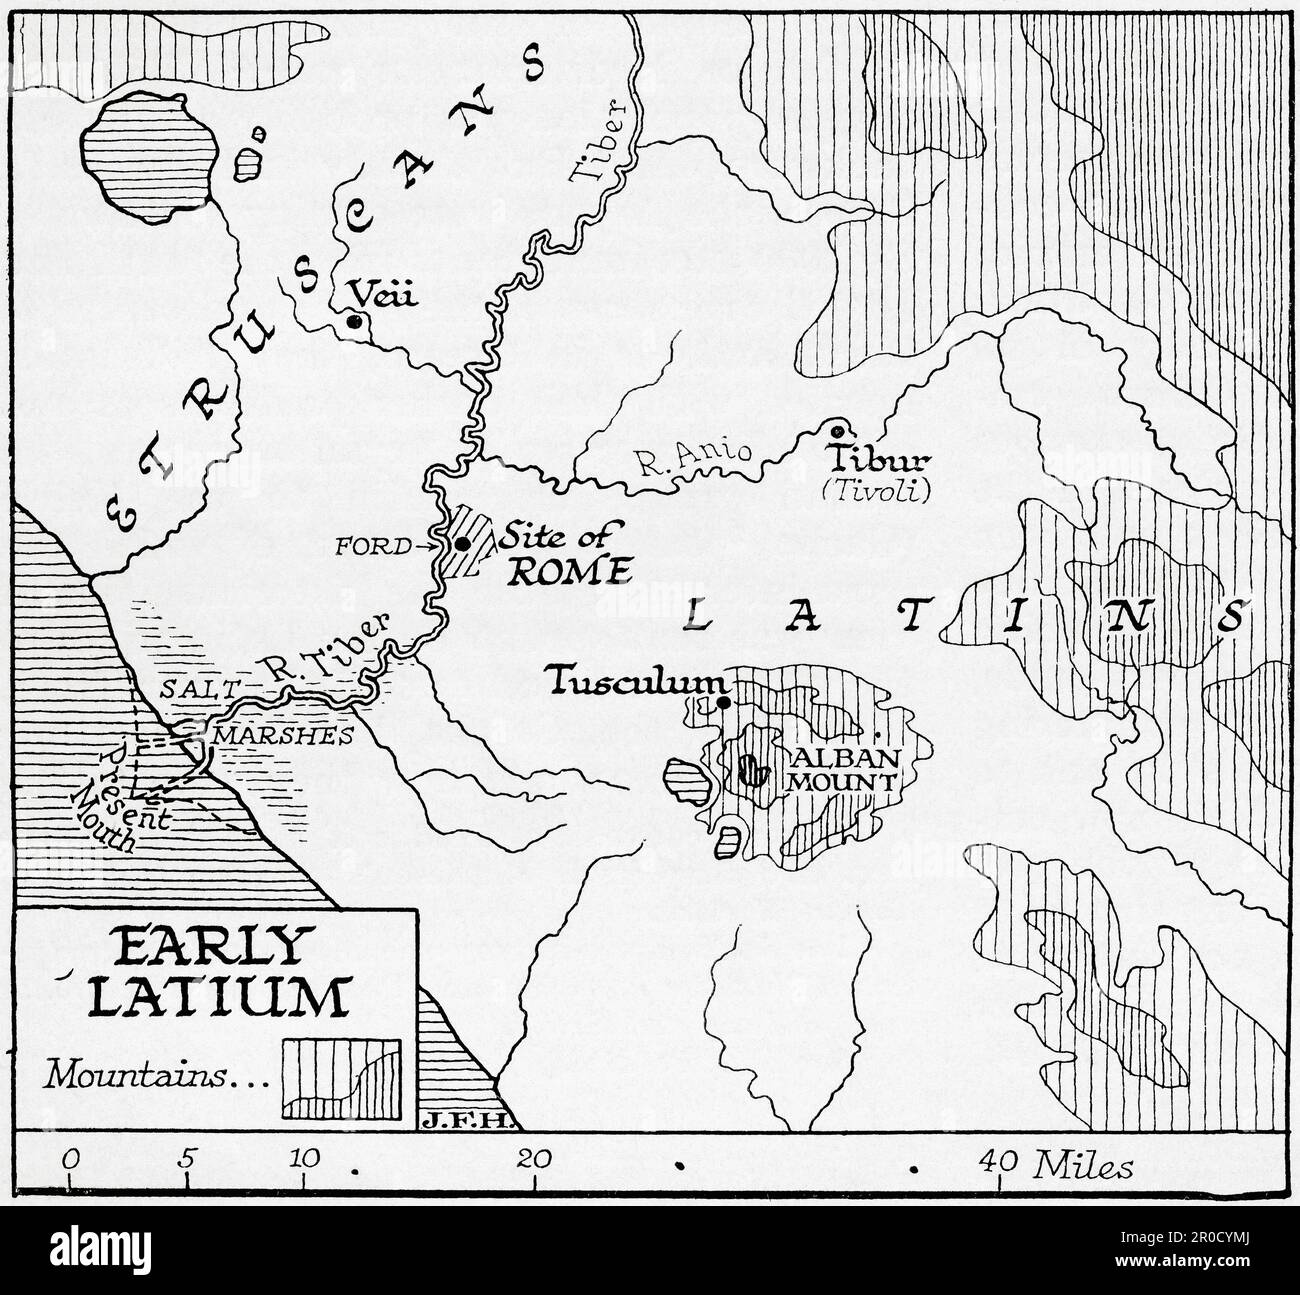 Carte montrant le début du Latium, la région du centre-ouest de l'Italie dans laquelle la ville de Rome a été fondée. Extrait du livre Outline of History de H.G. Puits, publié en 1920. Banque D'Images